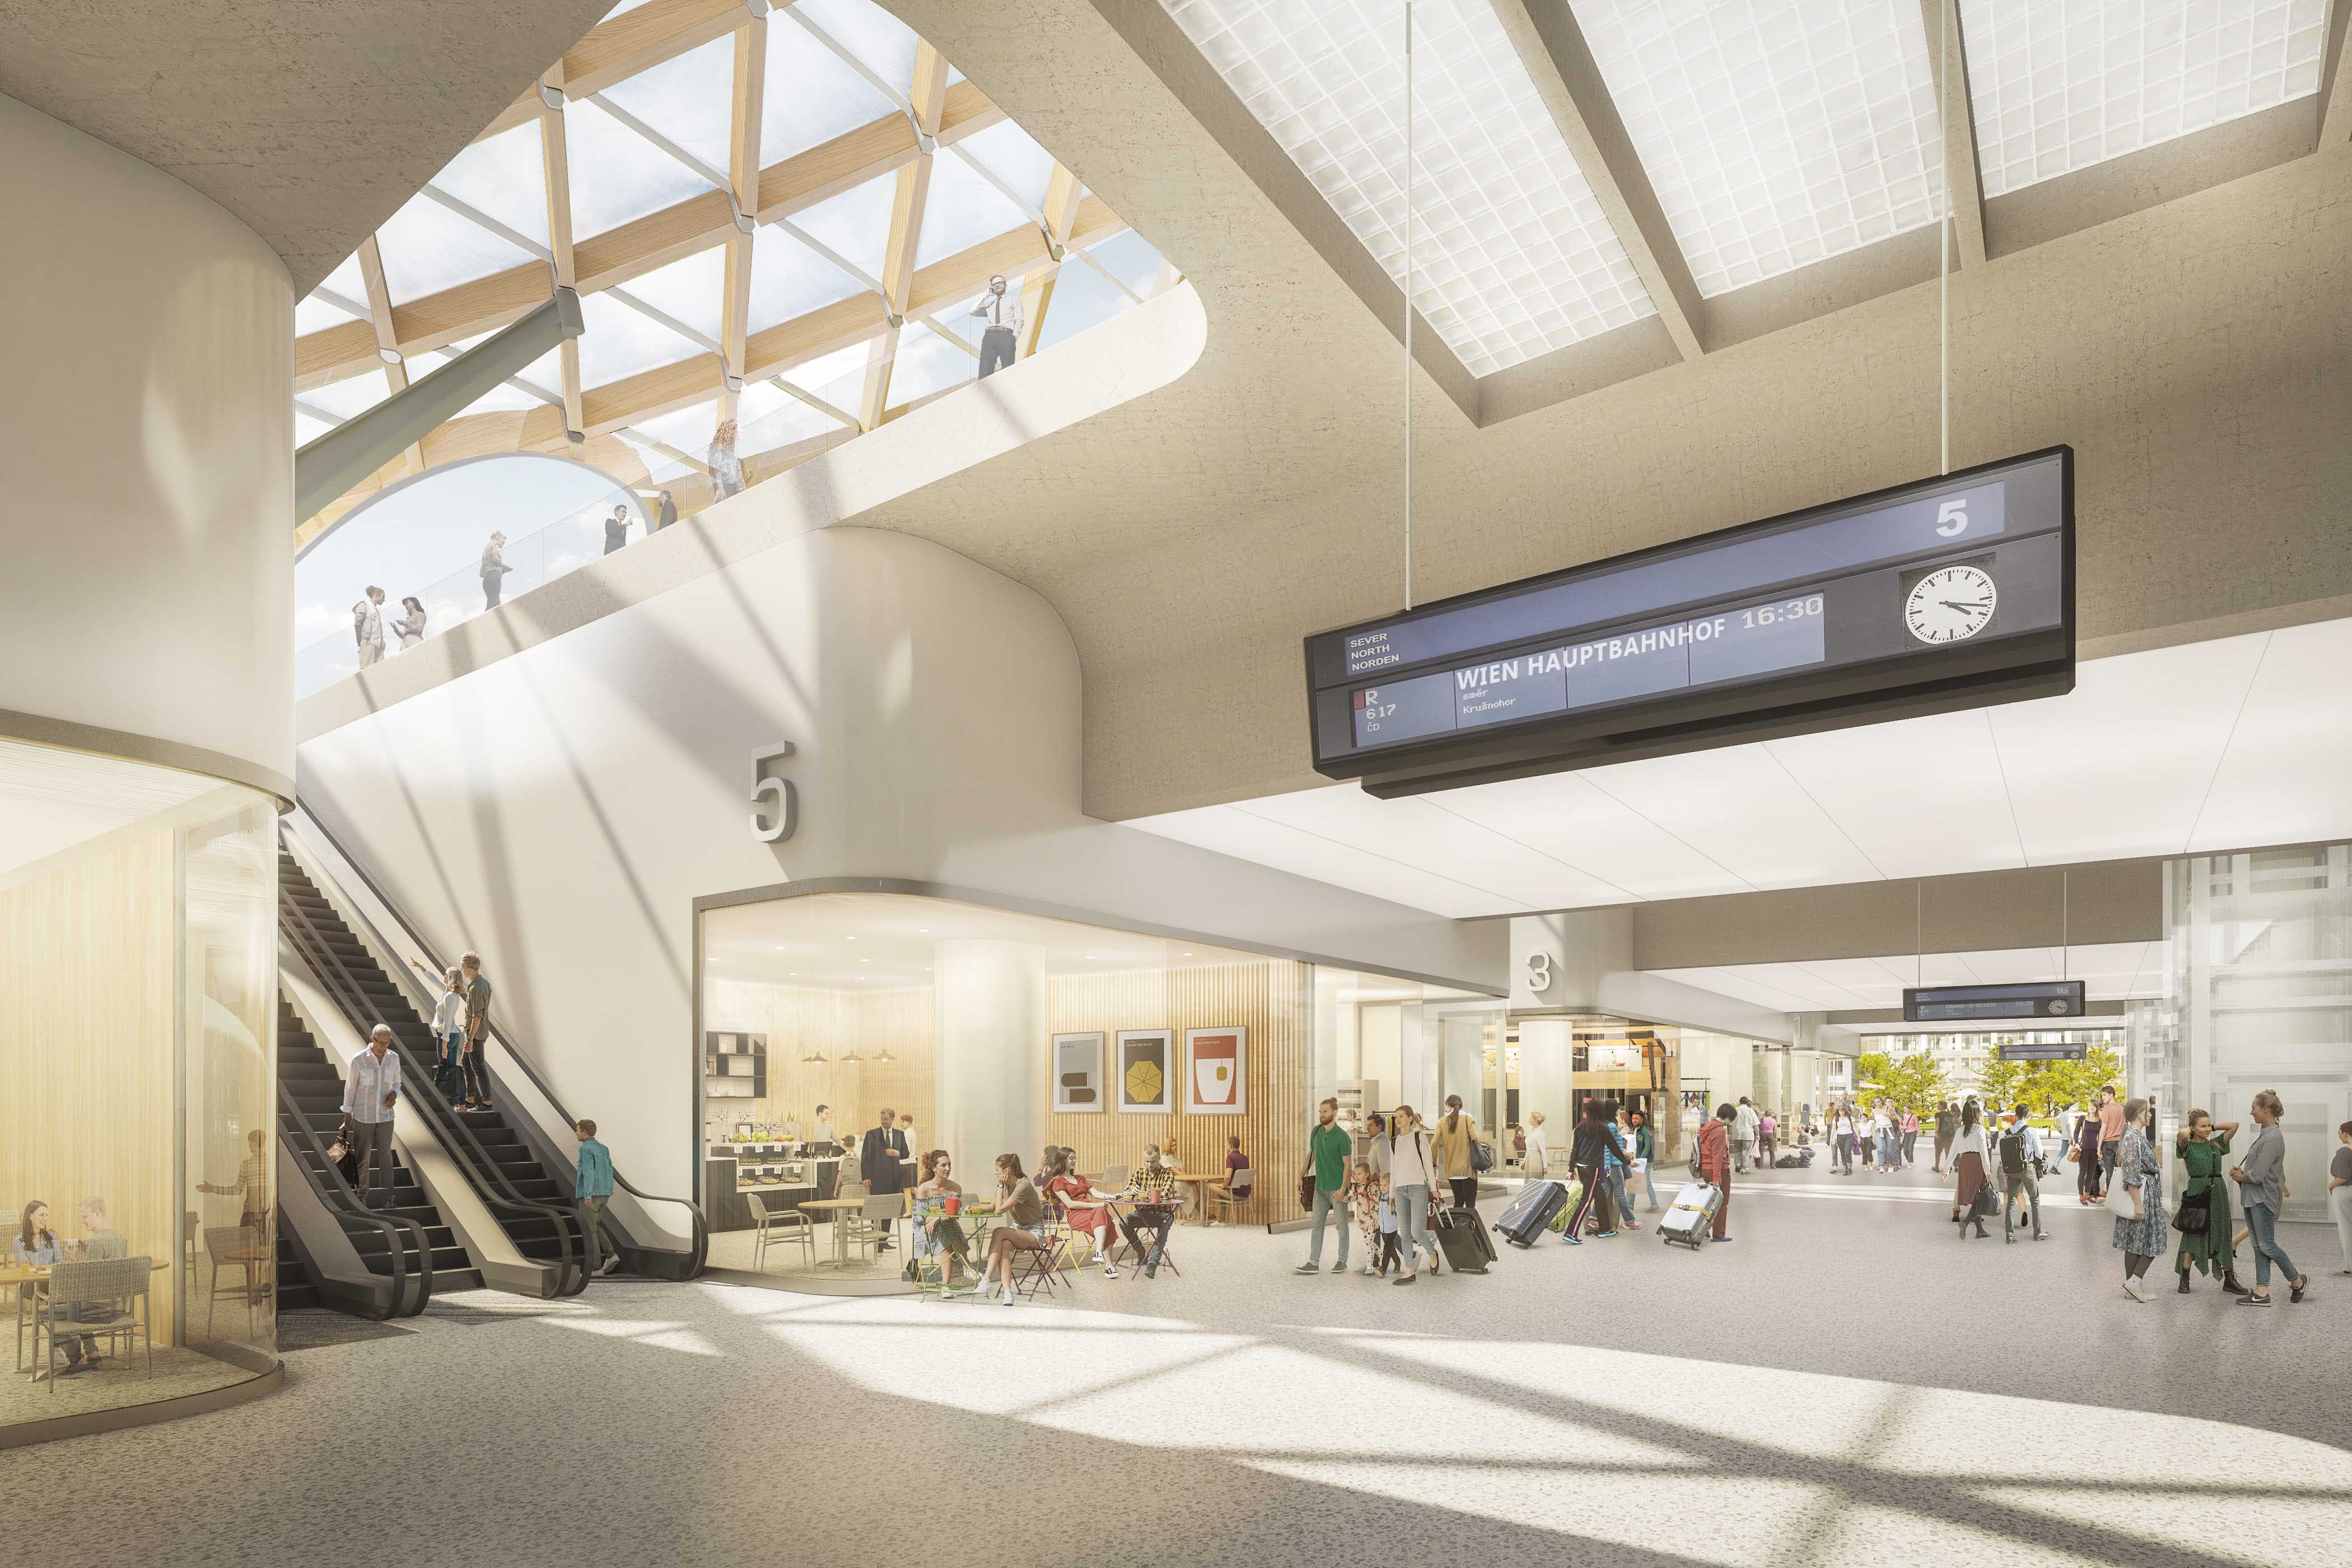 Wettbewerb - New Main Train Station Brno - Der Entwurf spiegelt sichtbar den Gedanken eines kompakten Verkehrs- und Umsteigeknotens mit kurzen Wegen, guter Orientierung und damit höchstem Komfort für alle Fahrgäste und Nutzer wider. 